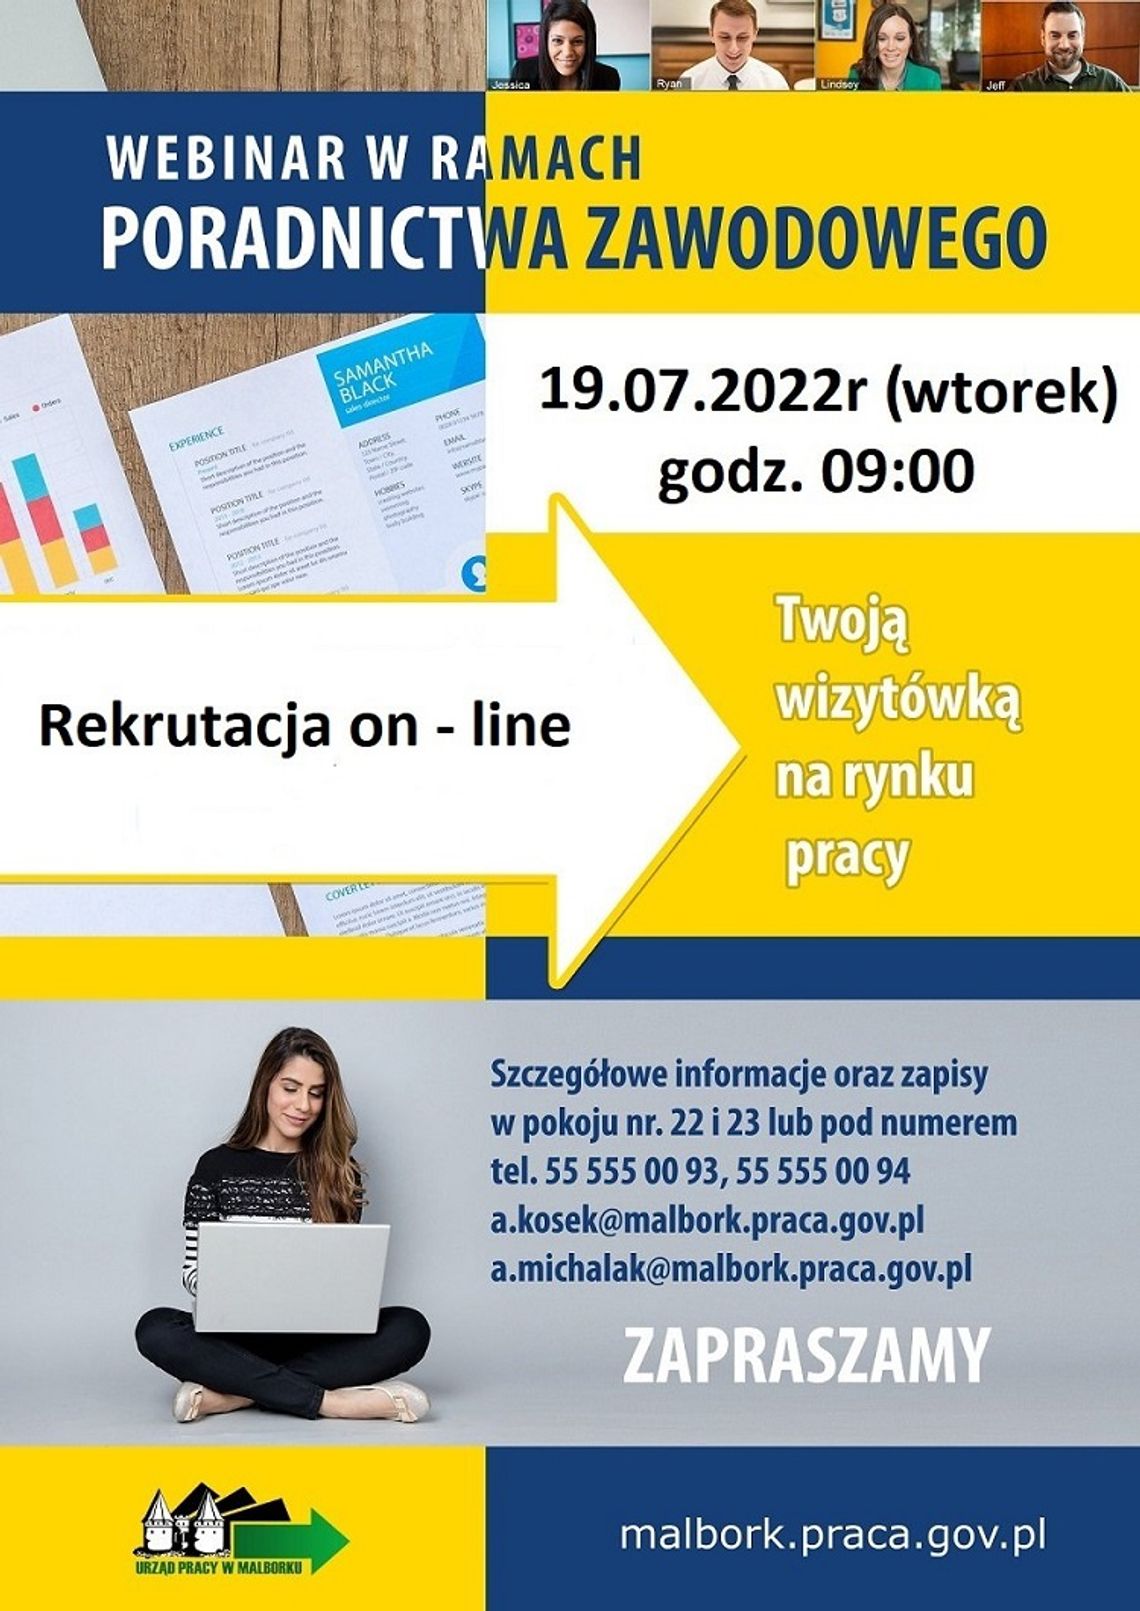 Jak przygotować się do rekrutacji online? Powiatowy Urząd Pracy w Malborku zaprasza na webinar.